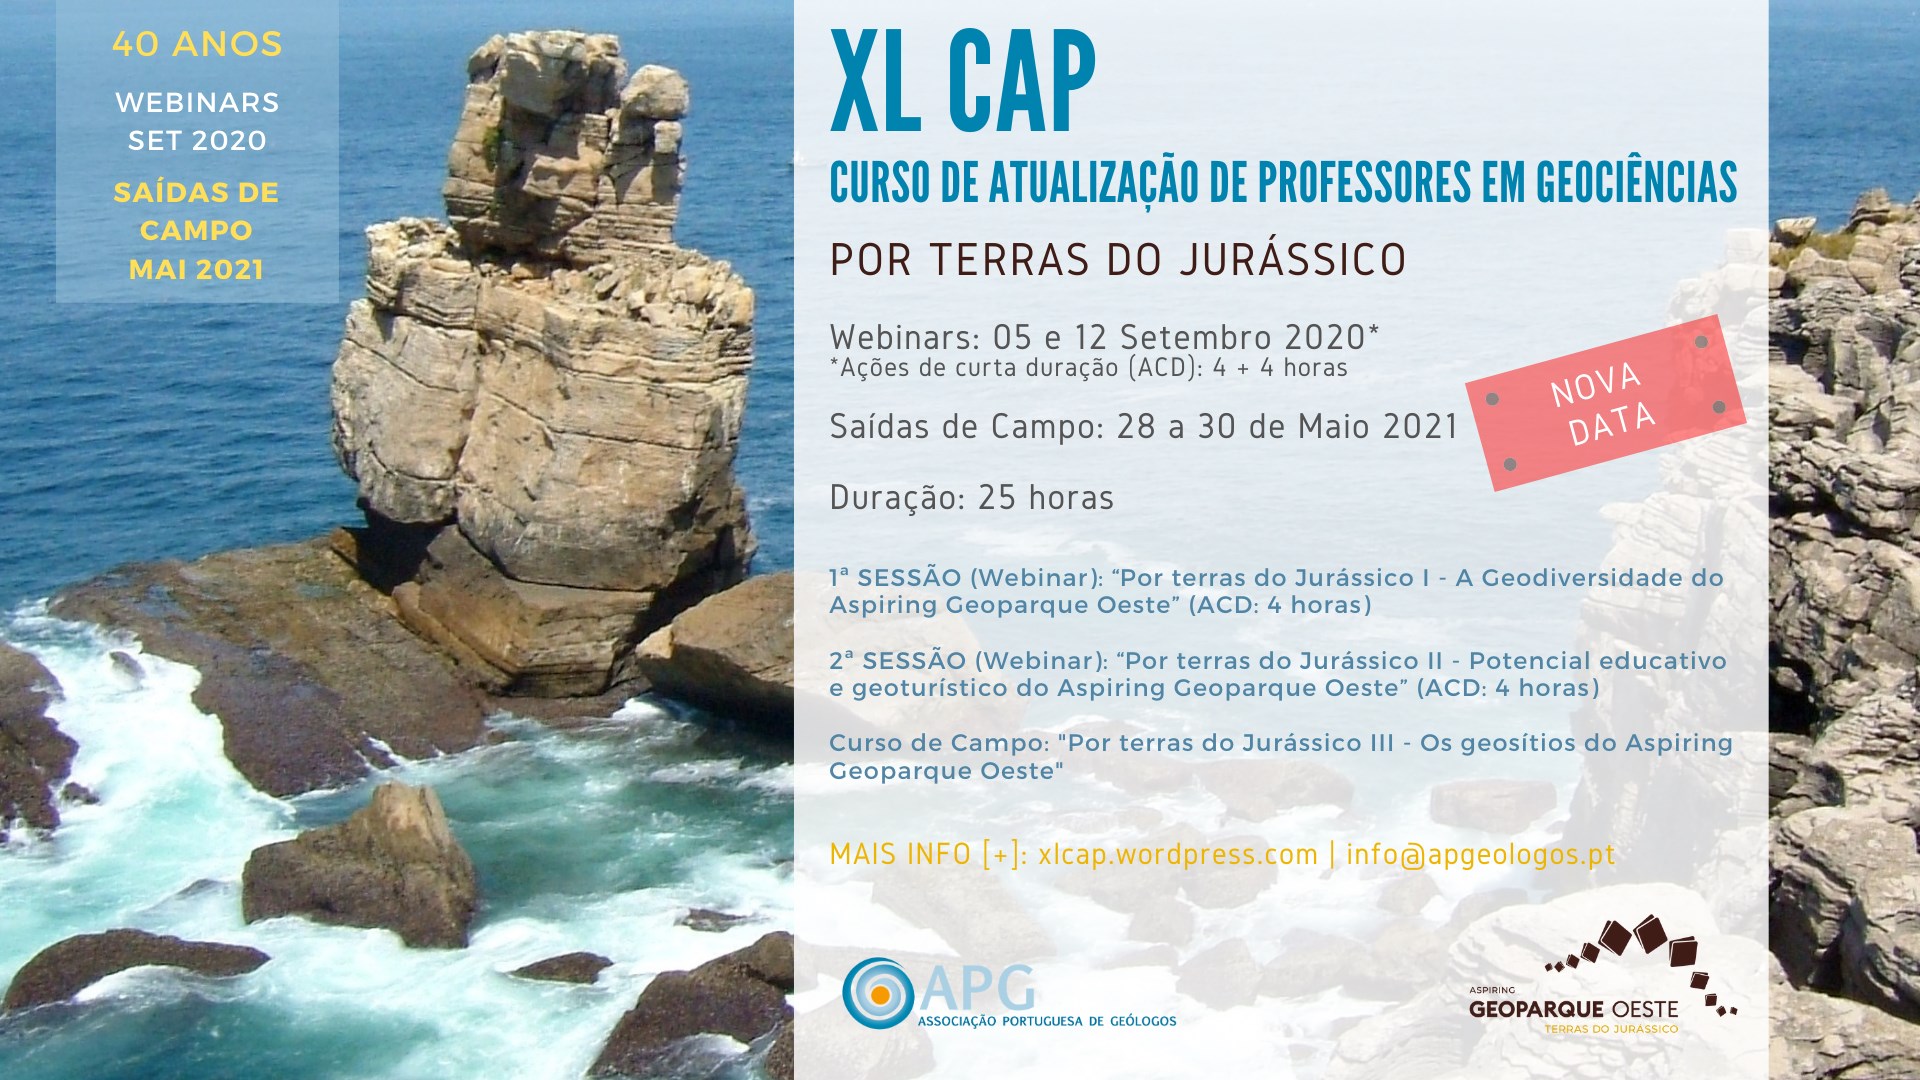 XL CAP - Curso de Atualização de Professores em Geociências - II